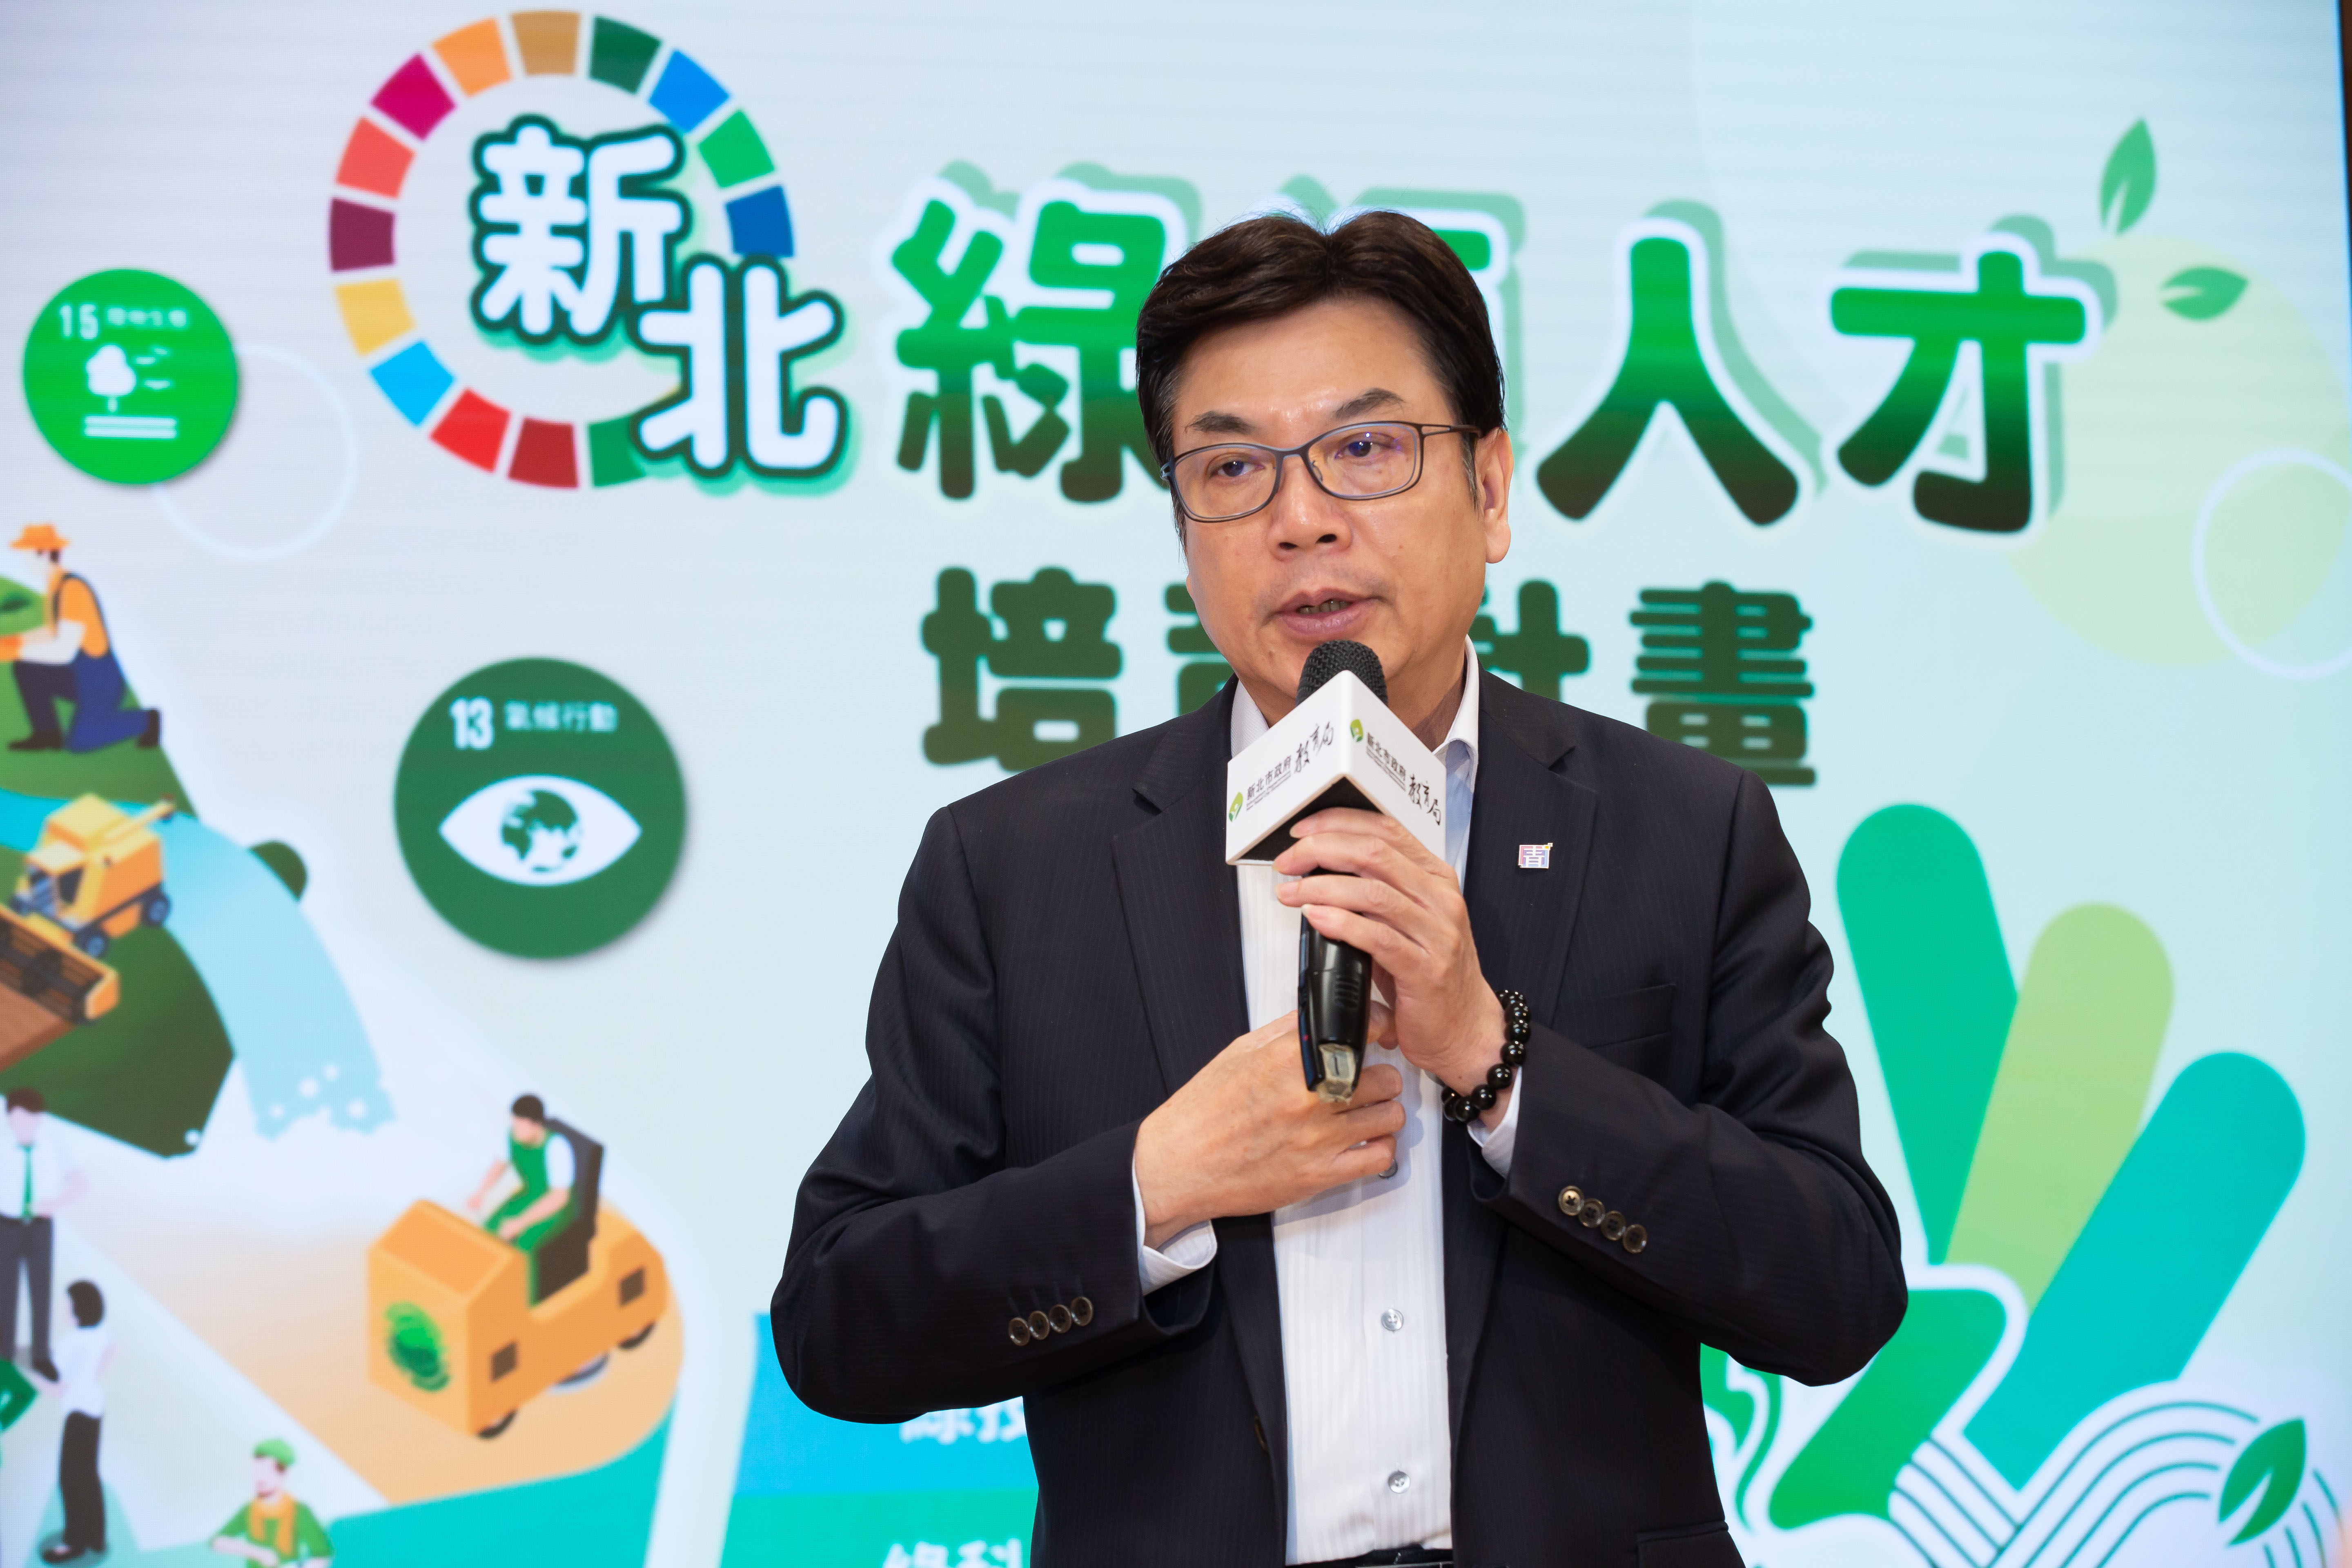 劉和然副市長表示，將分階段實施「綠素養、綠科學及綠技能」三大領域的人才培育_0.jpg